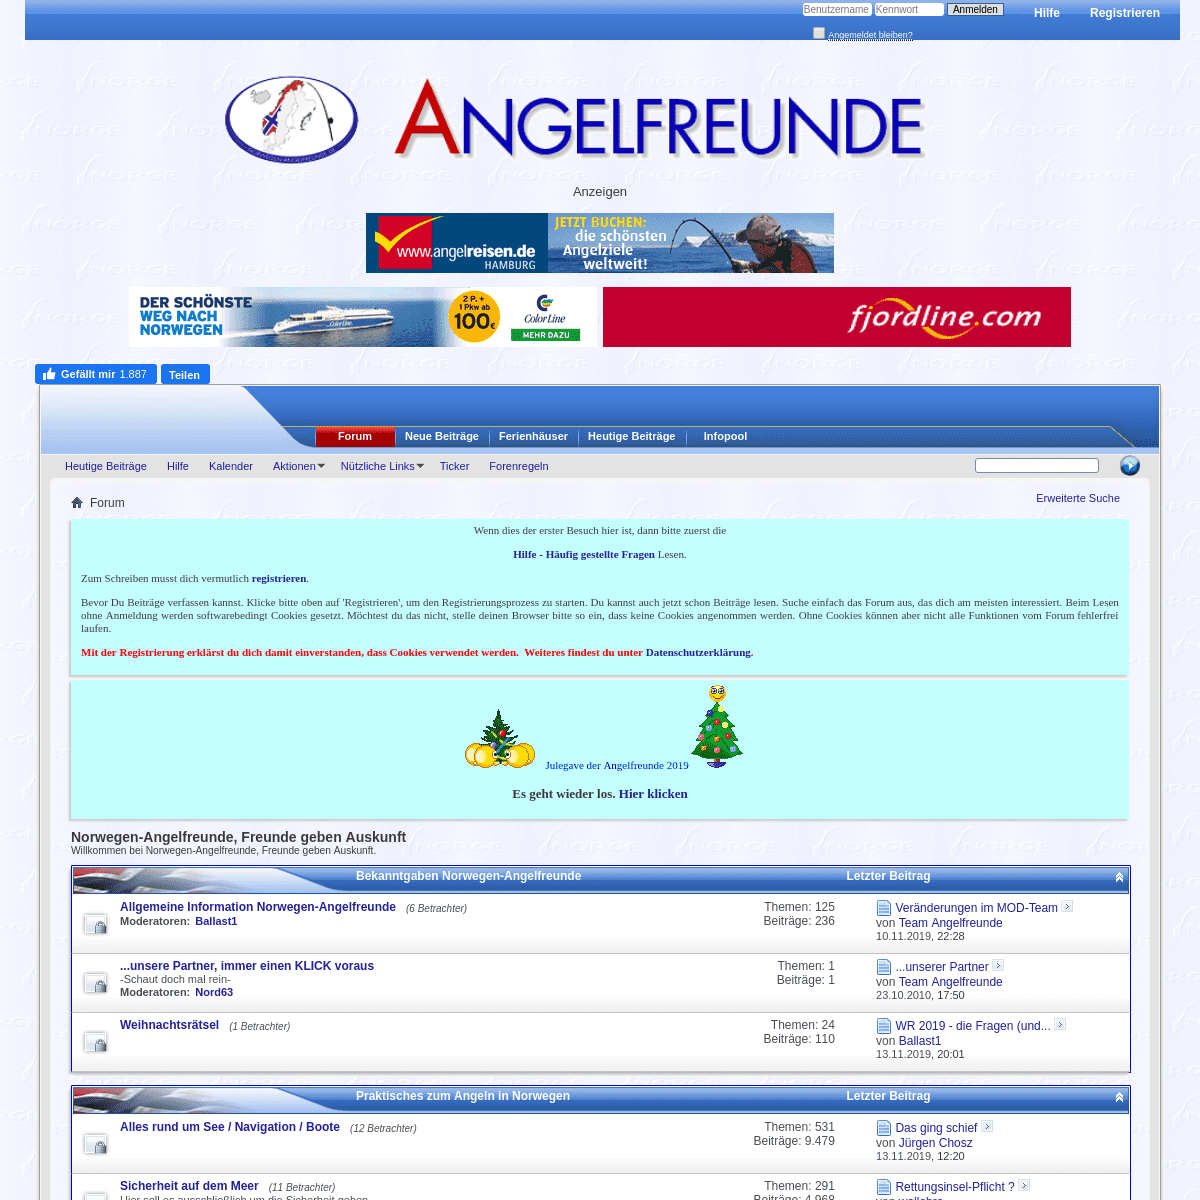 A complete backup of norwegen-angelfreunde.de